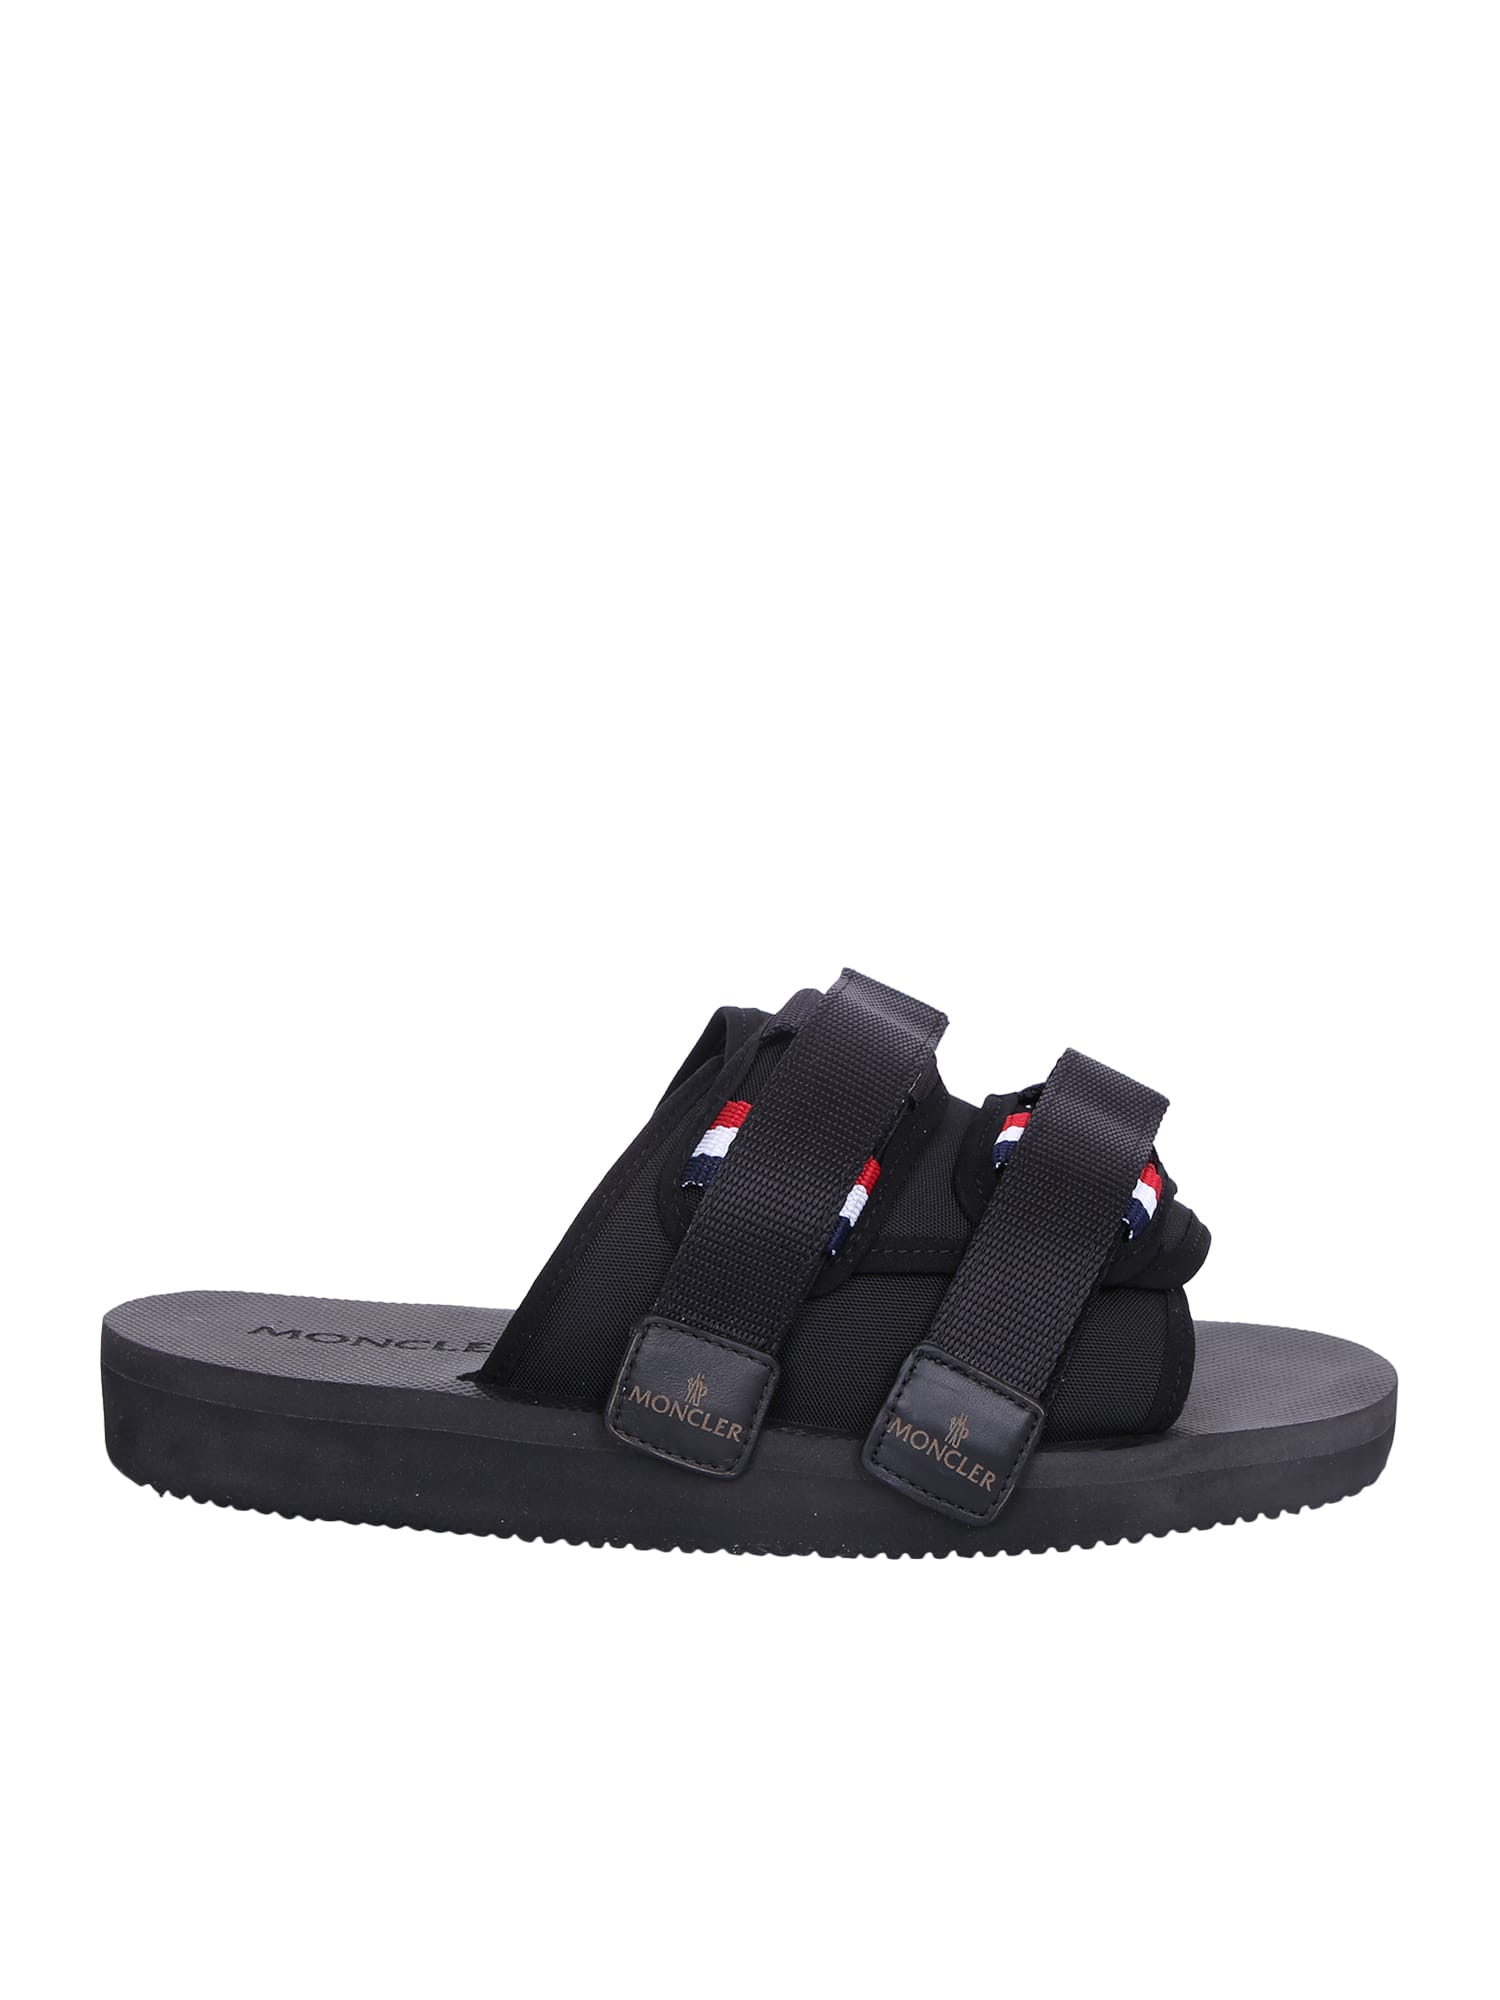 Shop Moncler Slideworks Sandals In Black